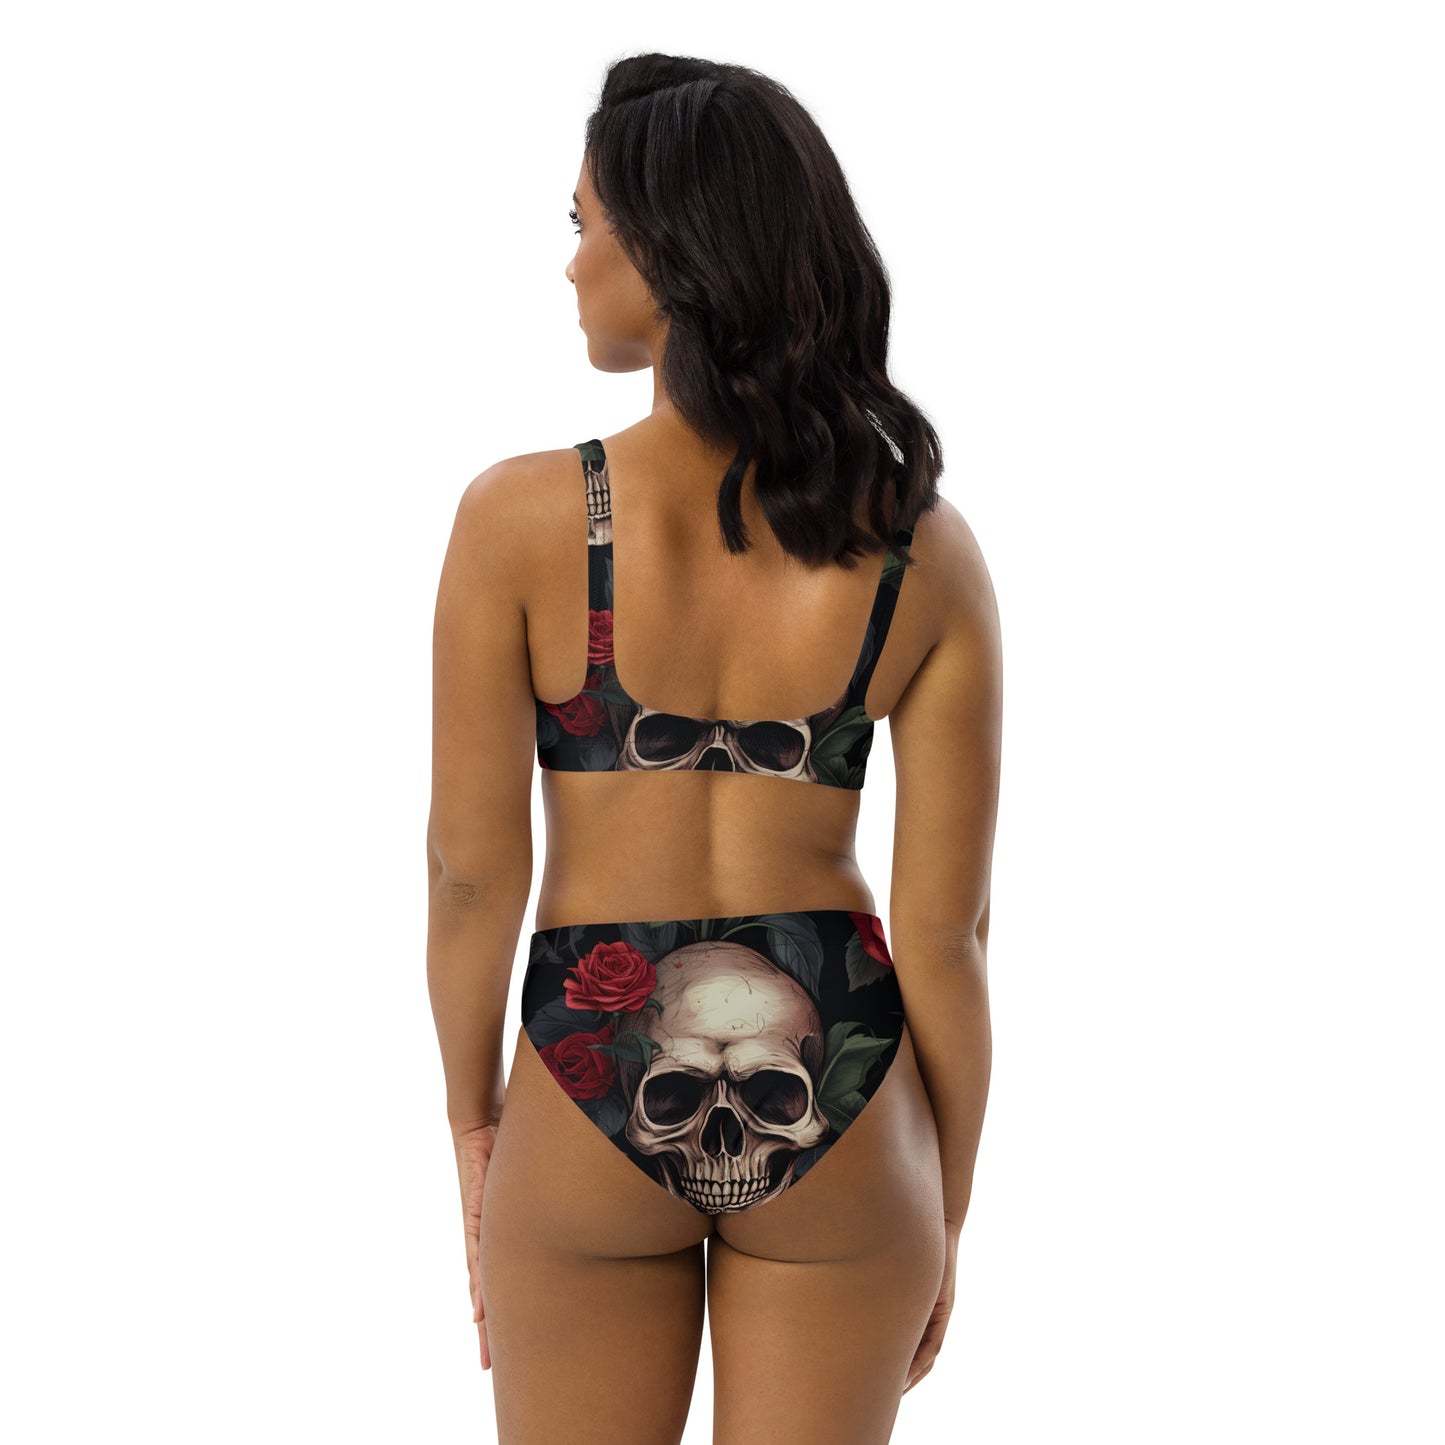 Zachte Goth-bikini / Gothic-zwempak met schedel / Gerecycleerde hoog getailleerde bikini / Eco Goth-mode